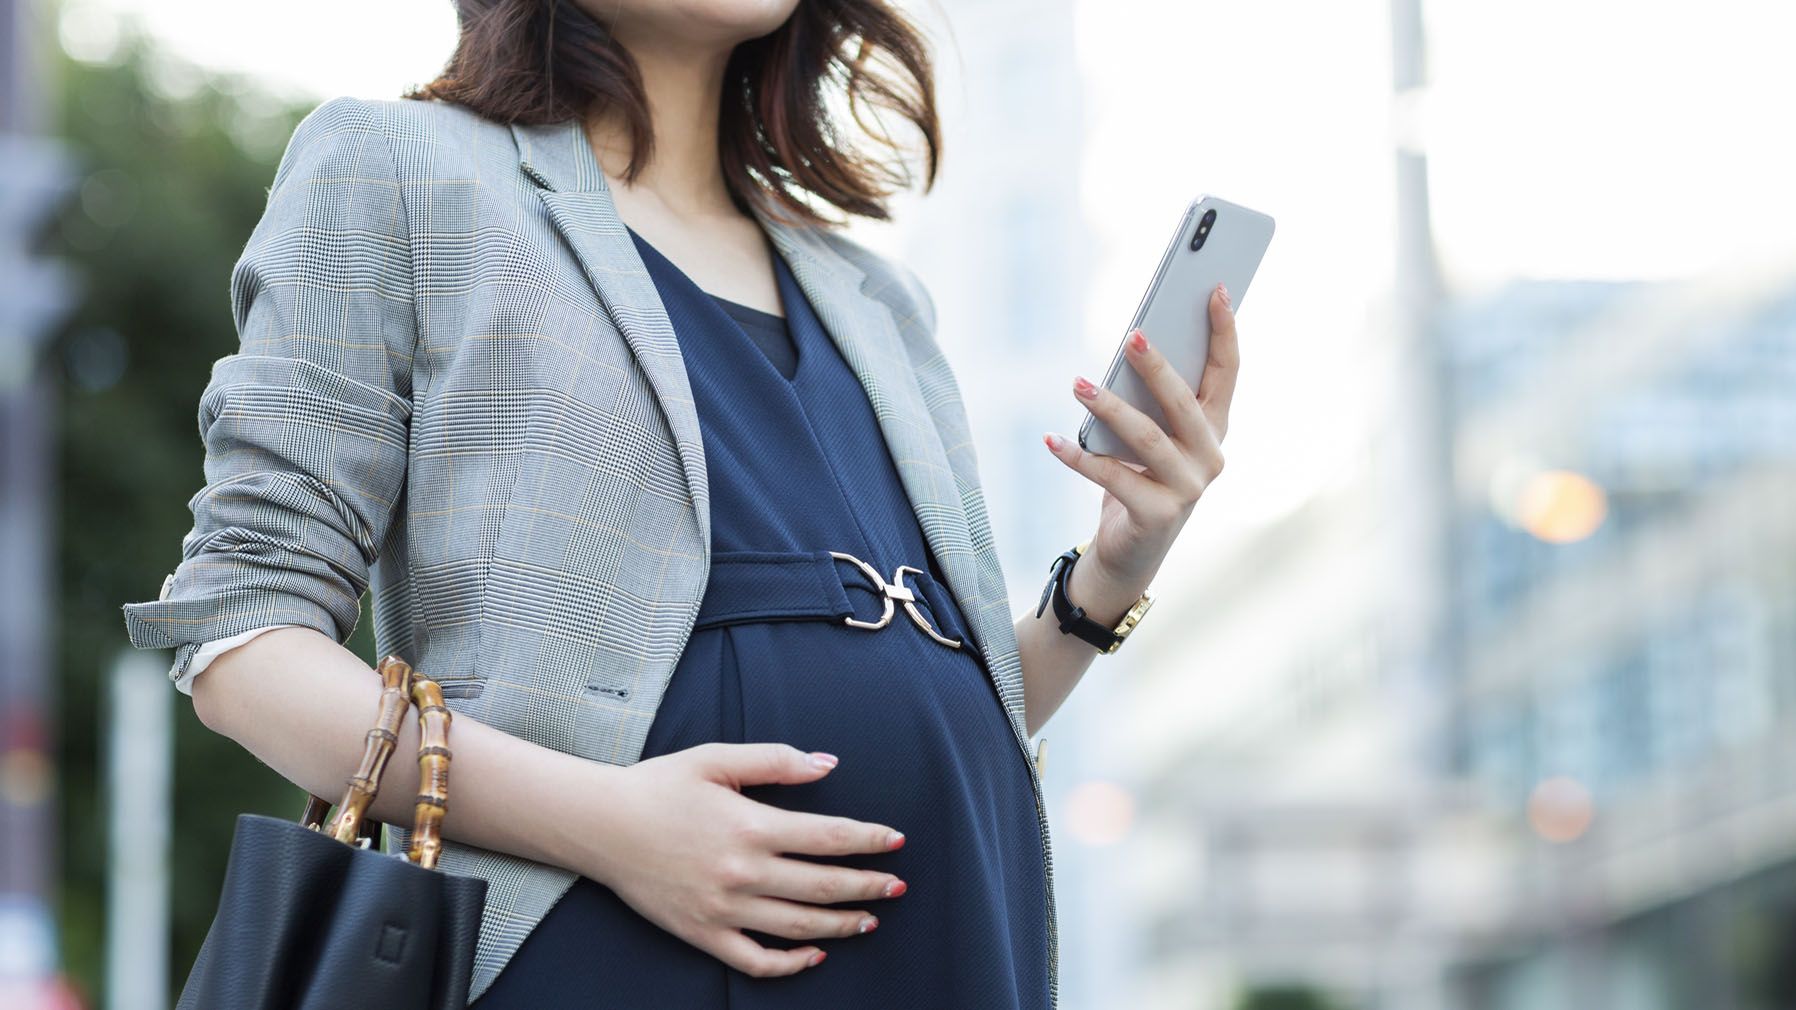 ネットを信じ込む妊産婦と医師の情報差の実態 不明確な情報が氾濫する中で必要なこととは | 子育て | 東洋経済オンライン